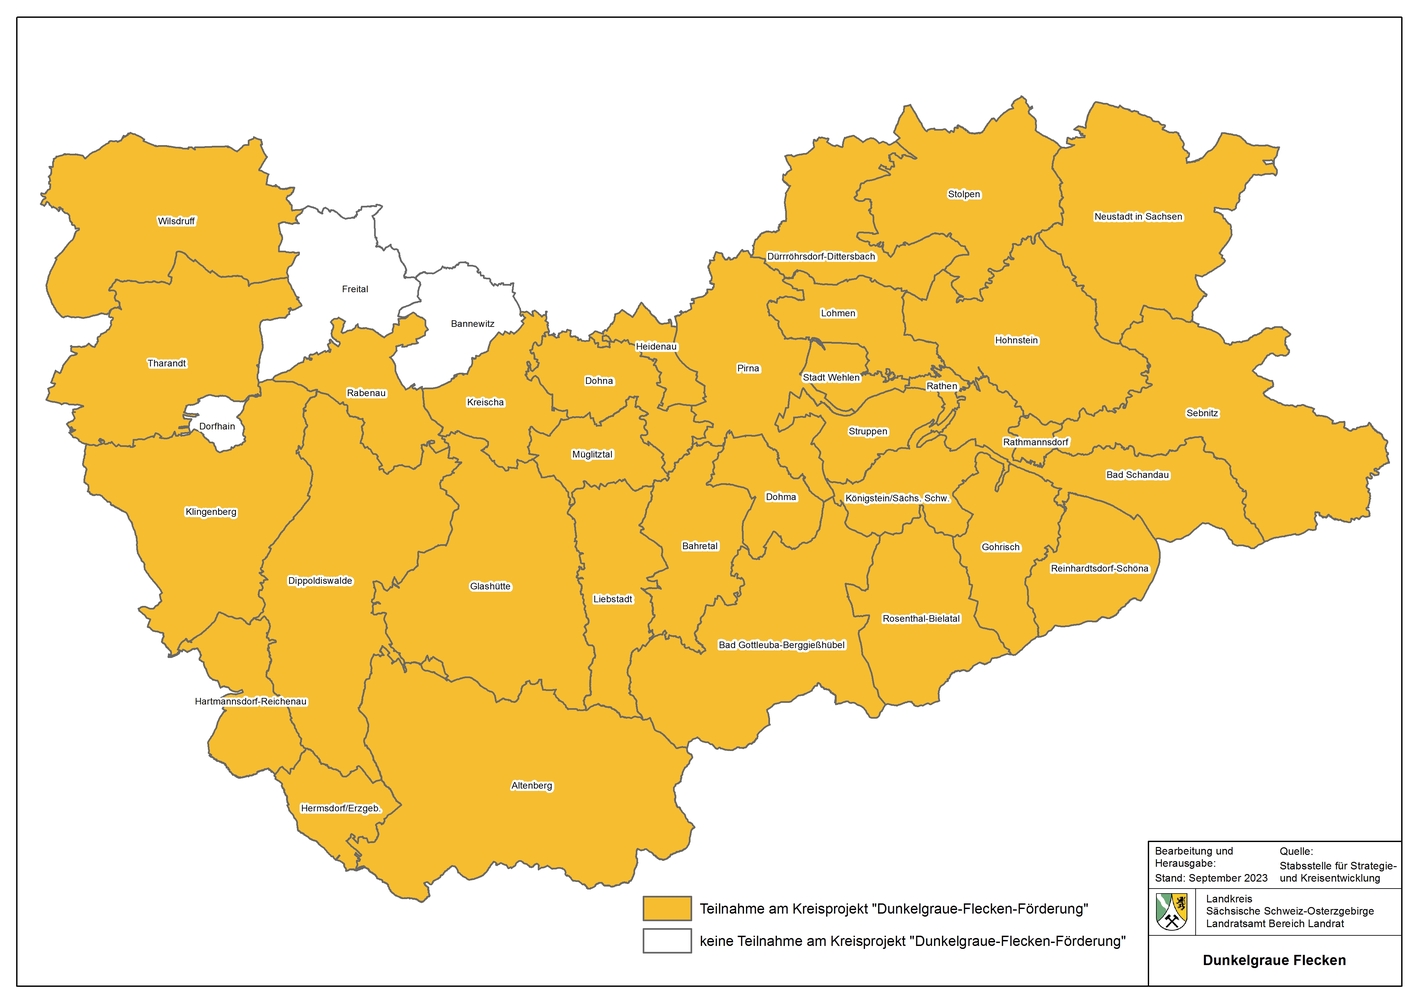 Teilnehmende Kommunen am Dunkelgraue-Flecken-Programm